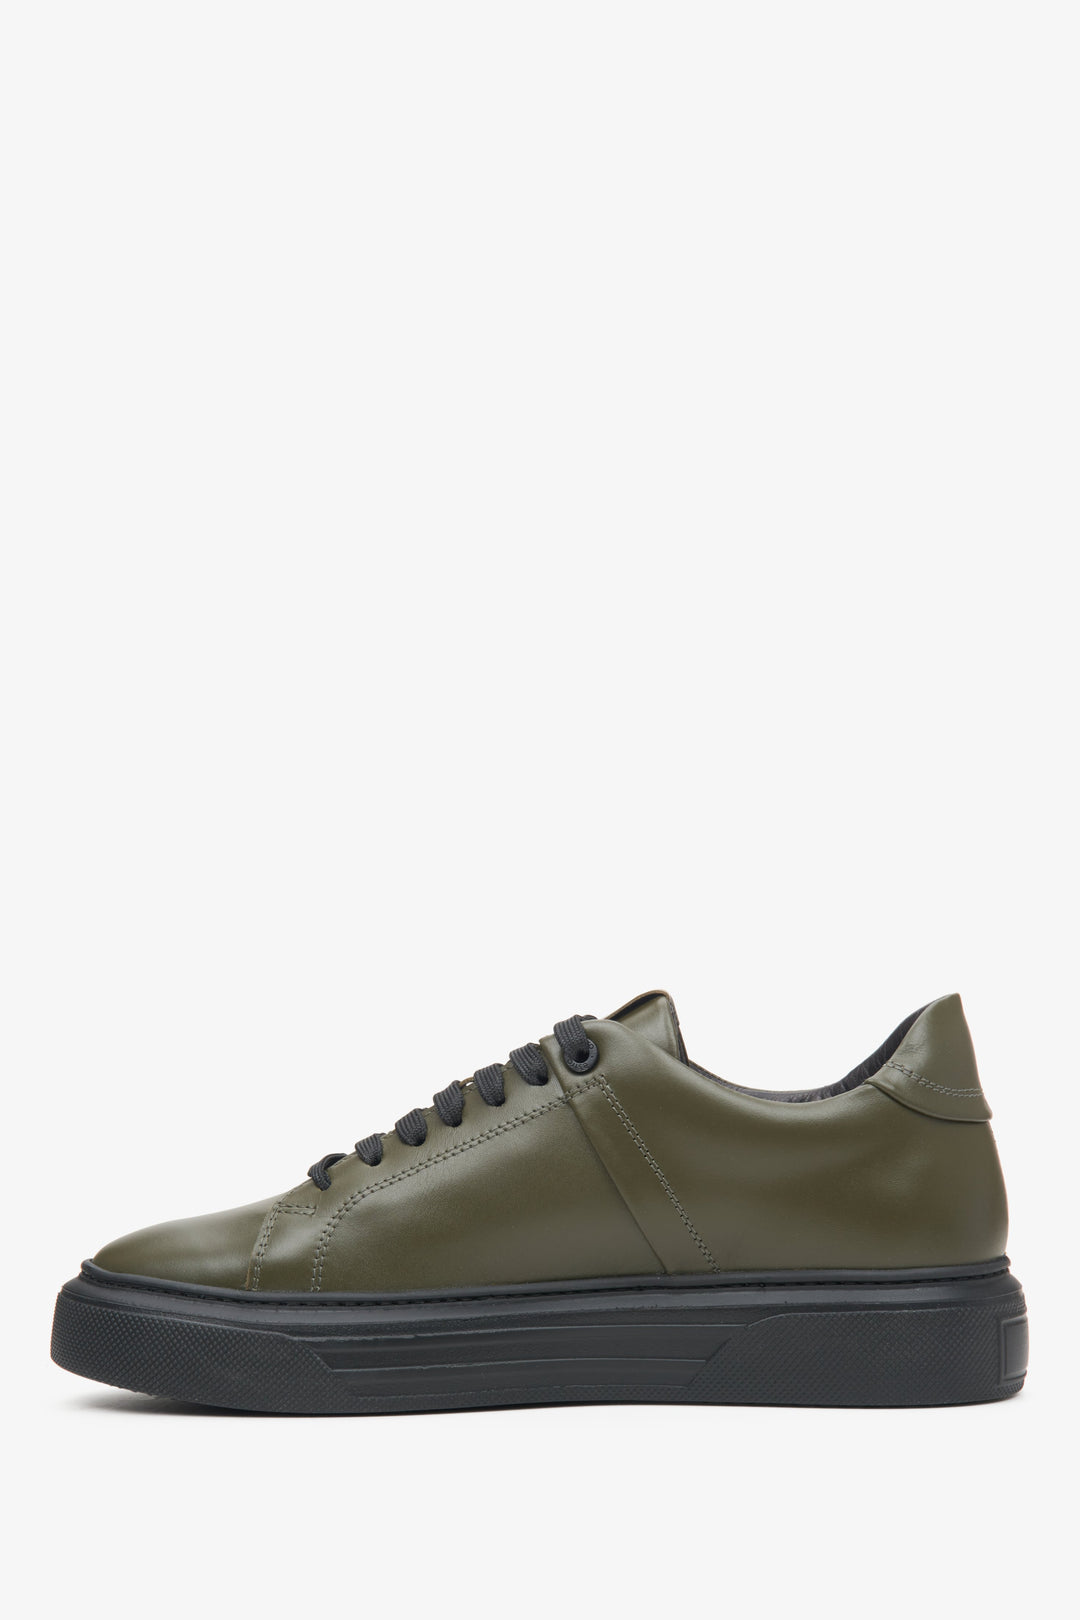 Men's khaki Estro sneakers in genuine leather - shoe profile.